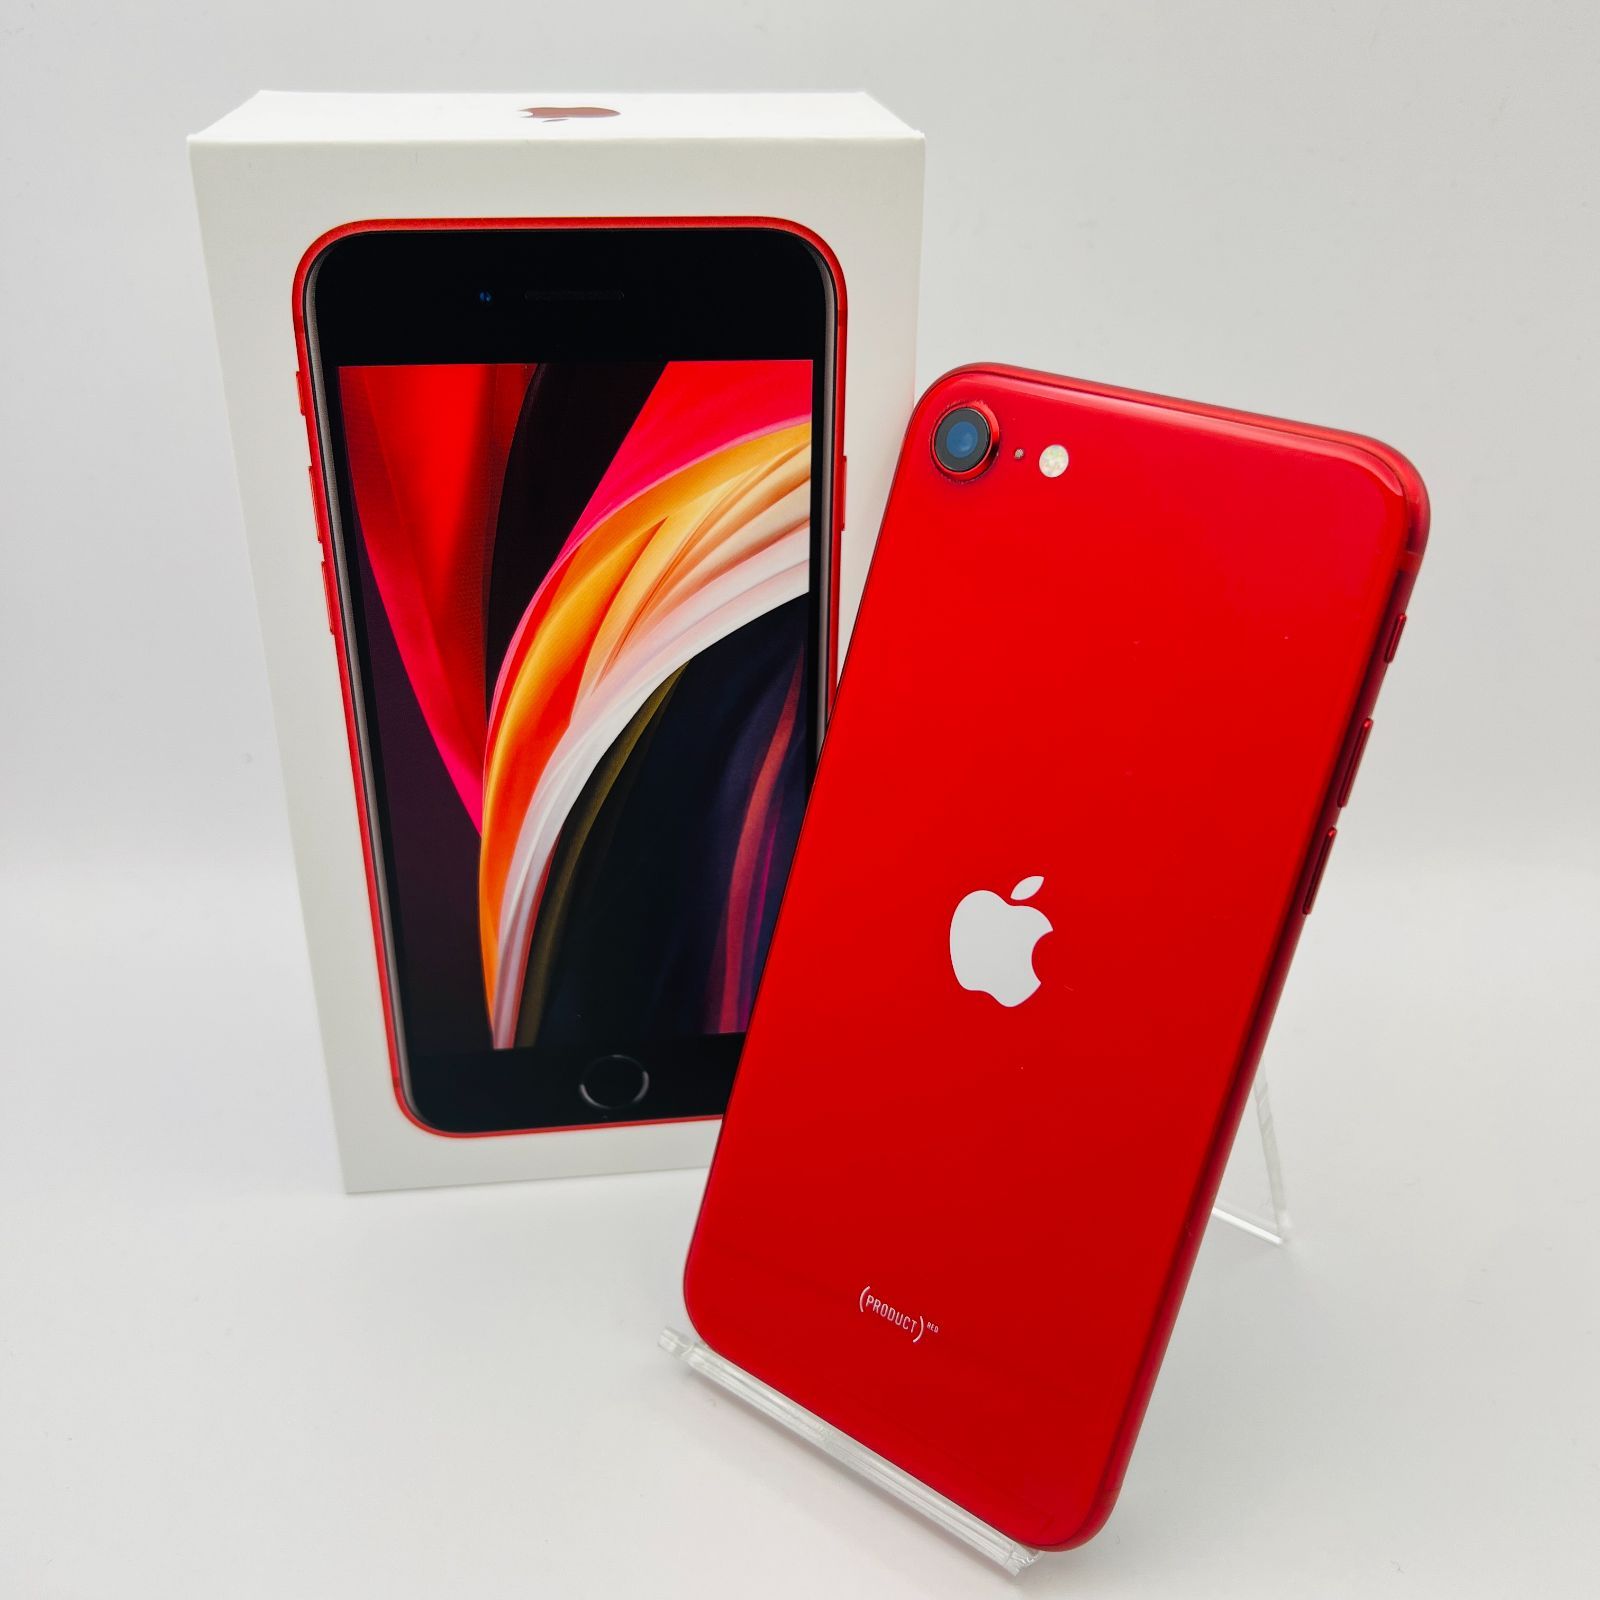 レッド付属品iPhone SE2 64MB red 新品未使用品 MX9U2J/A ...